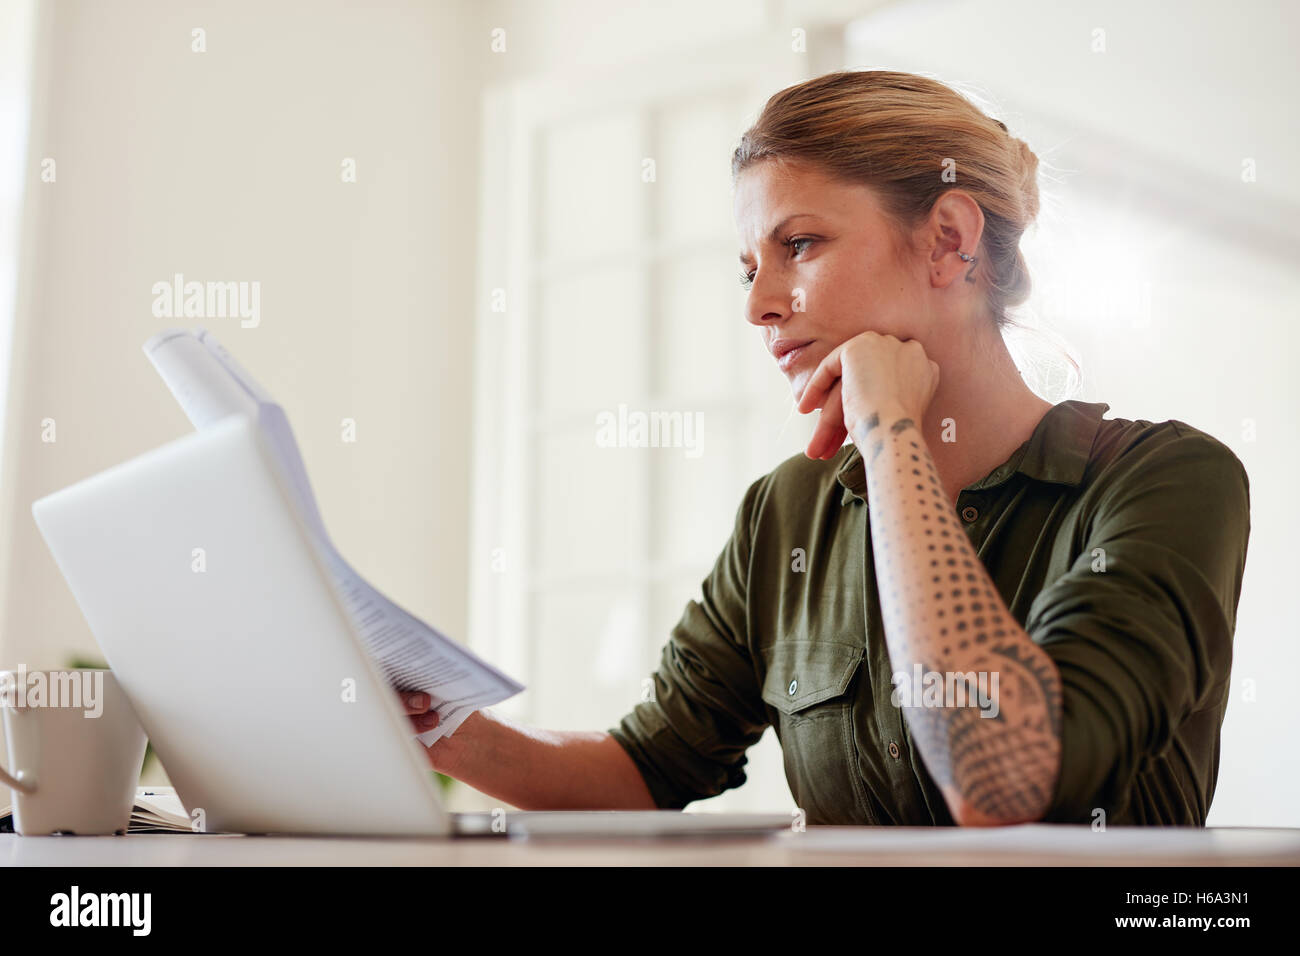 Foto de joven mujer leyendo documentos mientras se trabaja en una computadora portátil. Mujer sentada en una mesa en el interior y la lectura de algunos trámites. Foto de stock